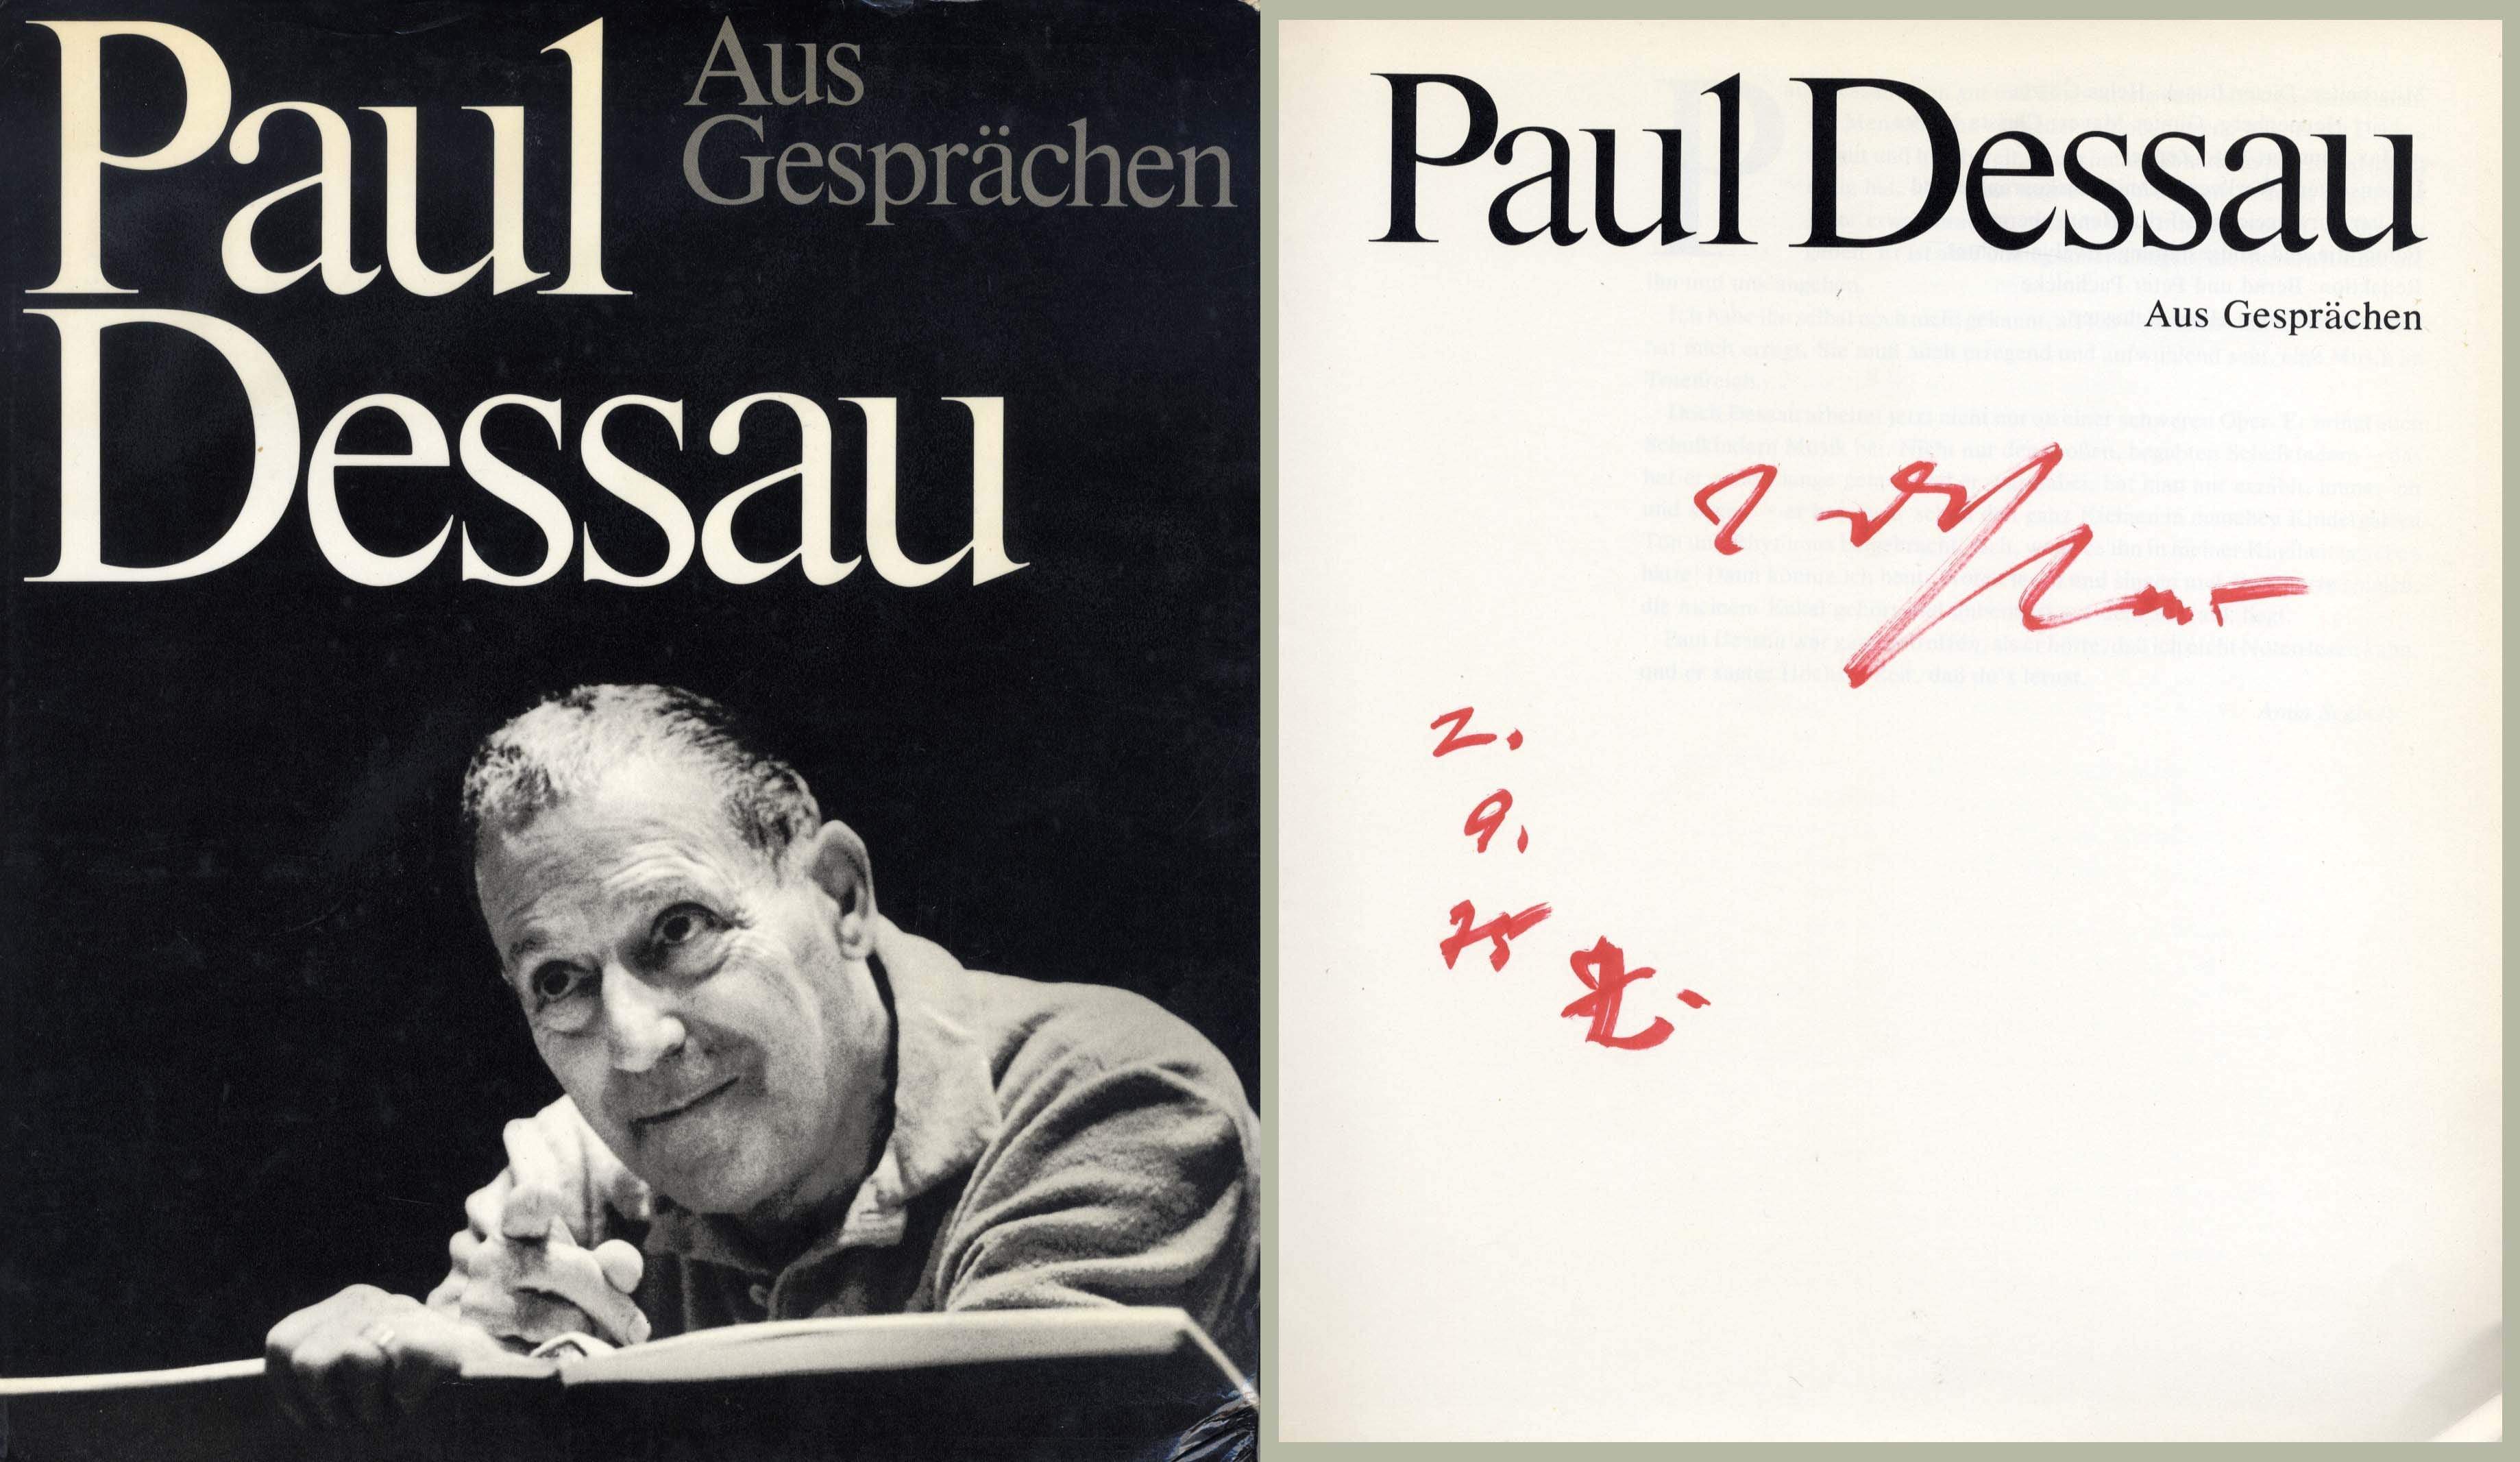 Dessau, Paul autograph